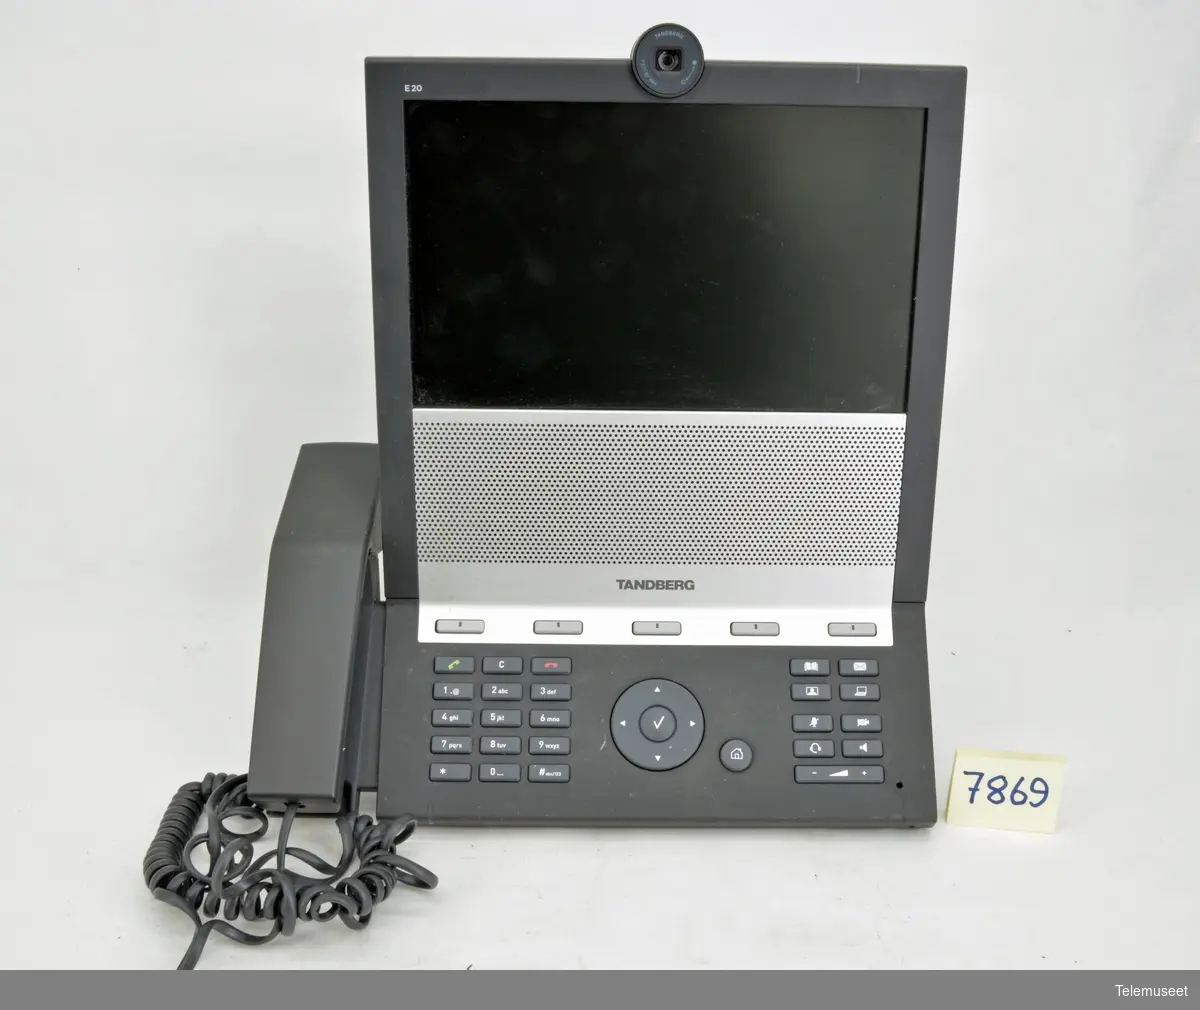 Tandberg E20 er en videotelefon produsert av det norske selskapet Tandberg Telecom.

E20 kom i salg i fjerde kvartal 2008, og er ment som en erstatning til tradisjonelle kontortelefoner. Enheten har 10,6-tommers LCD-skjerm, fem megapikslers kamera, lydvalitet på linje med CD og bildekvalitet på linje med DVD.[1]

E20 er en standardbasert SIP-enhet. Den støtter MPEG-4 AAC-LD for lyd, mens støttede videostandarder er H.264, H.263+ og H.263.[2]

Tandberg E20 ble kåret til «Årets personlige produkt» av bladet Kapital i 2009.[3]